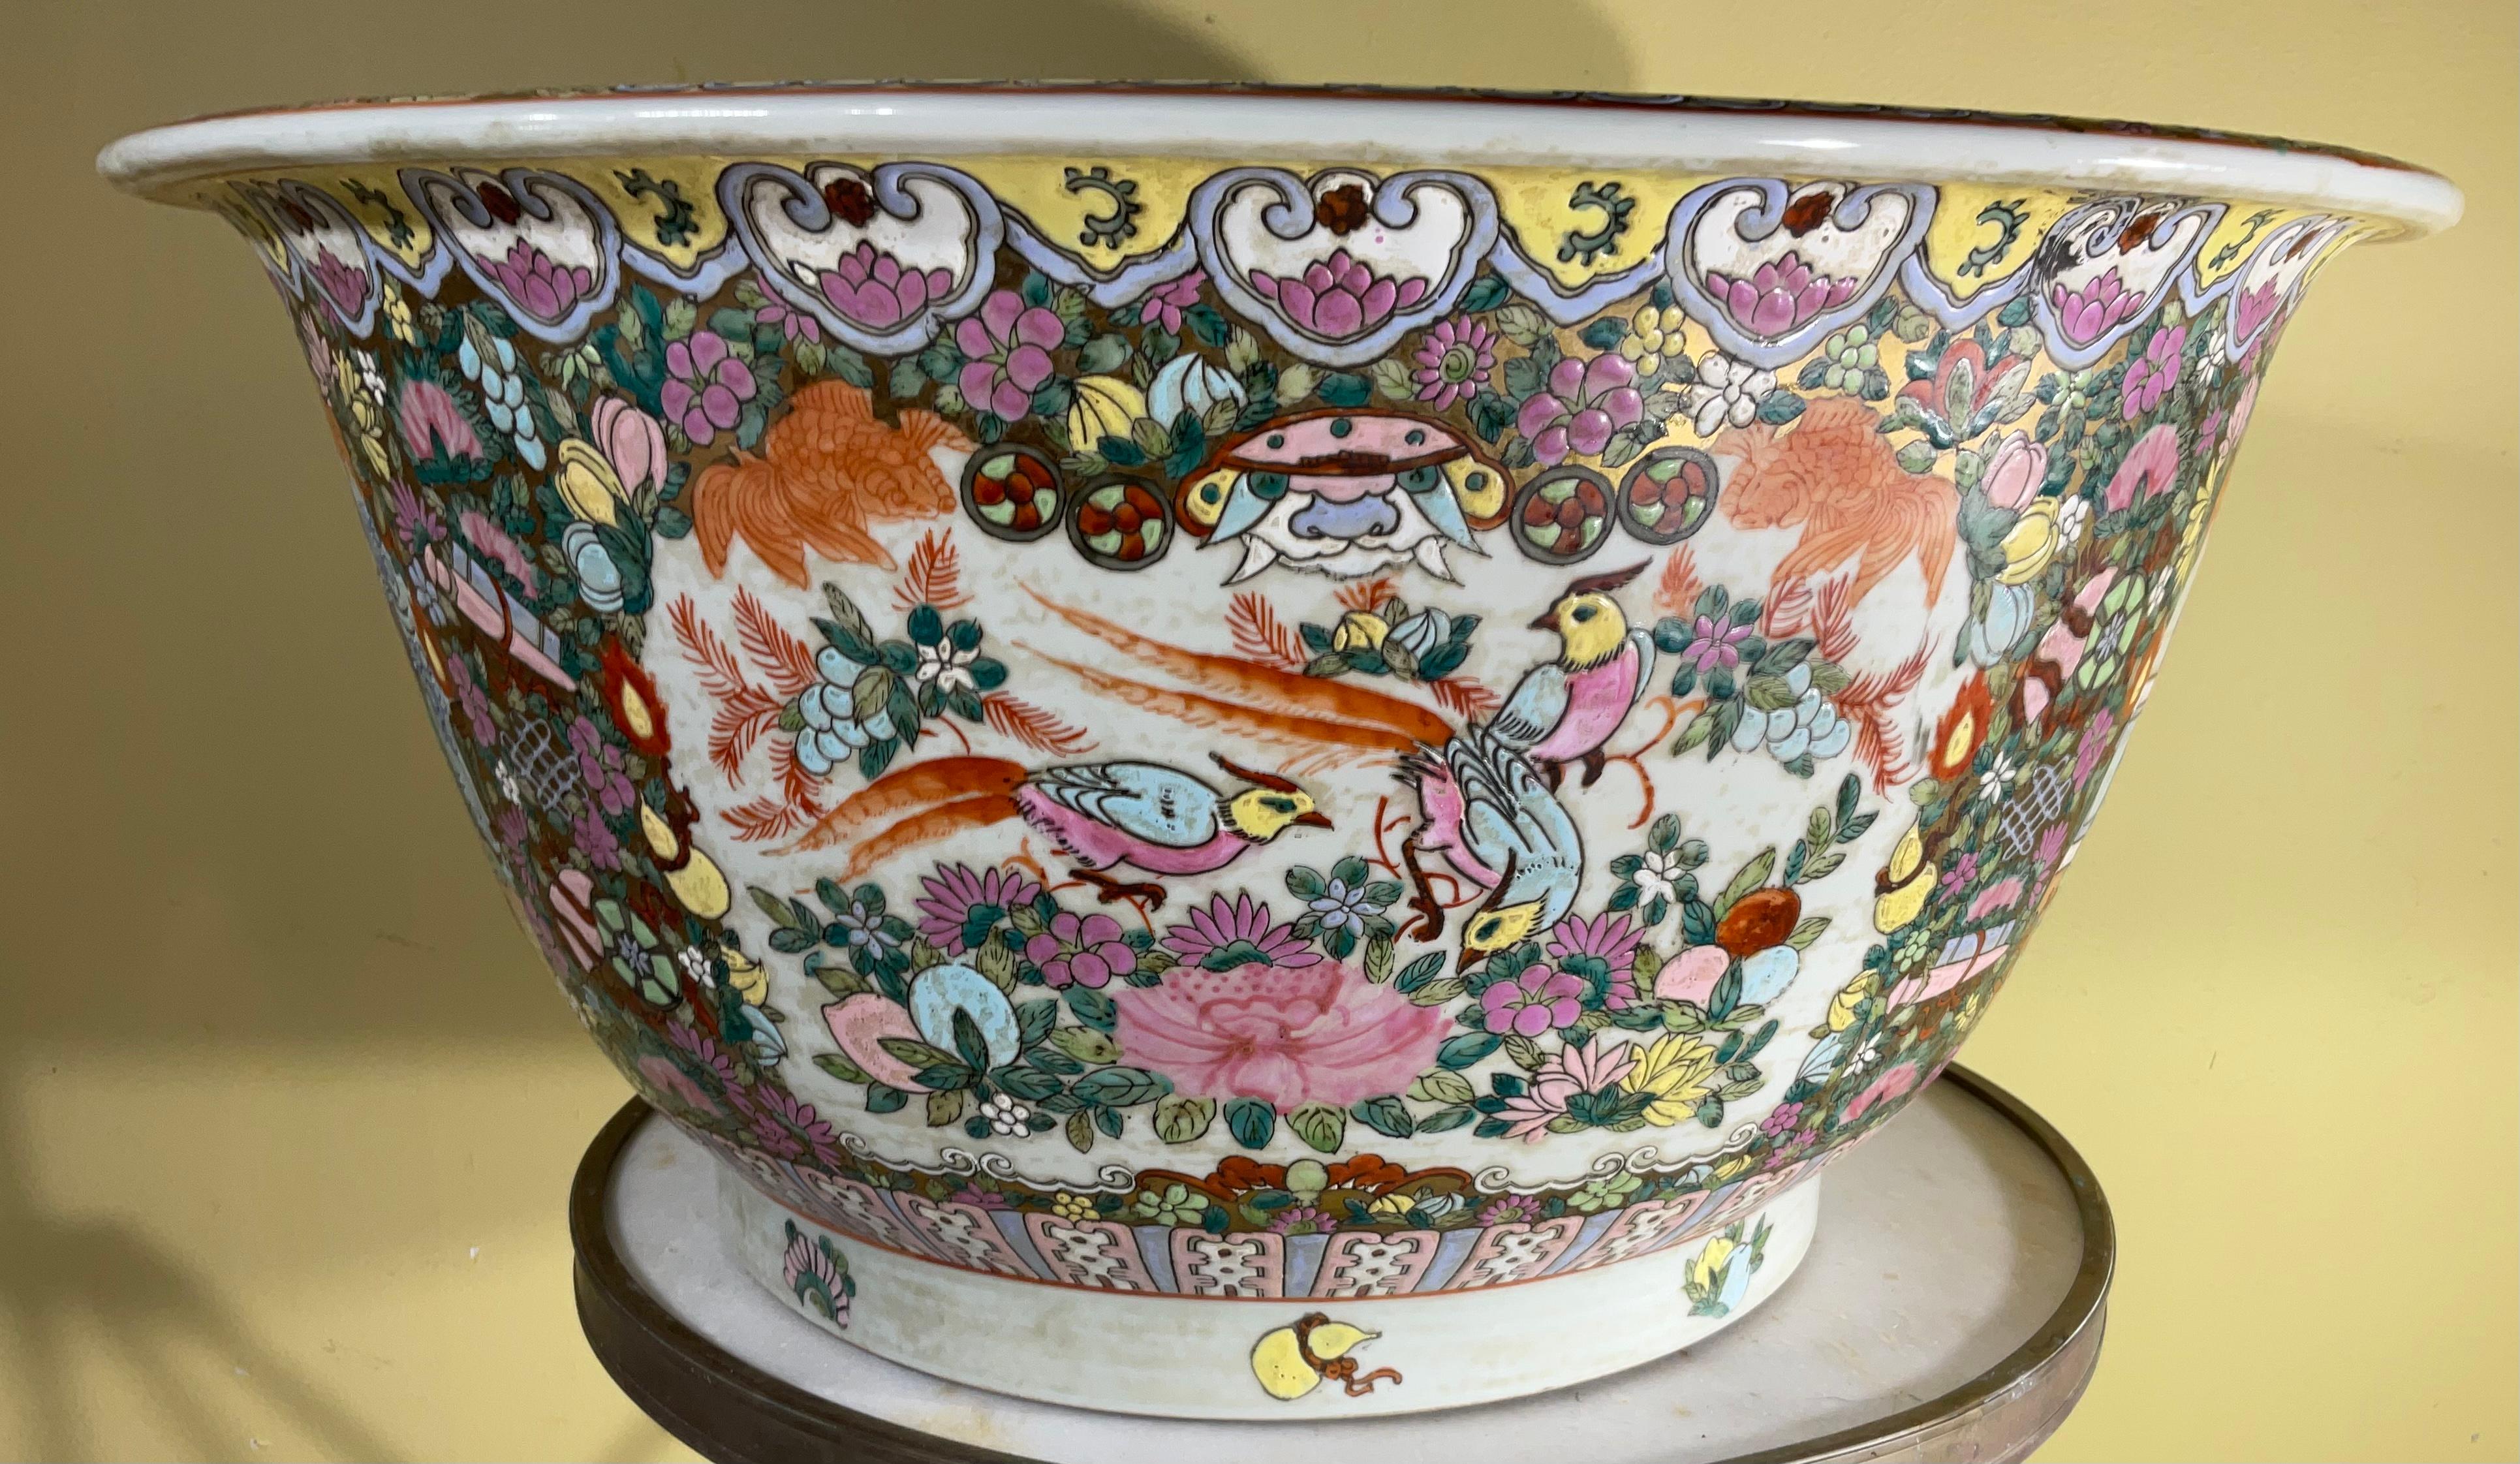 Großes buntes chinesisches Porzellan-Fischglas im Vintage-Stil. Mit klassischen, orientalischen Szenen mit chinesischen Familien, Vögeln, Blumen und chinesischen Motiven. Es ist innen auch gemalt könnte als Mittelstück, Pflanzer oder Dekoration